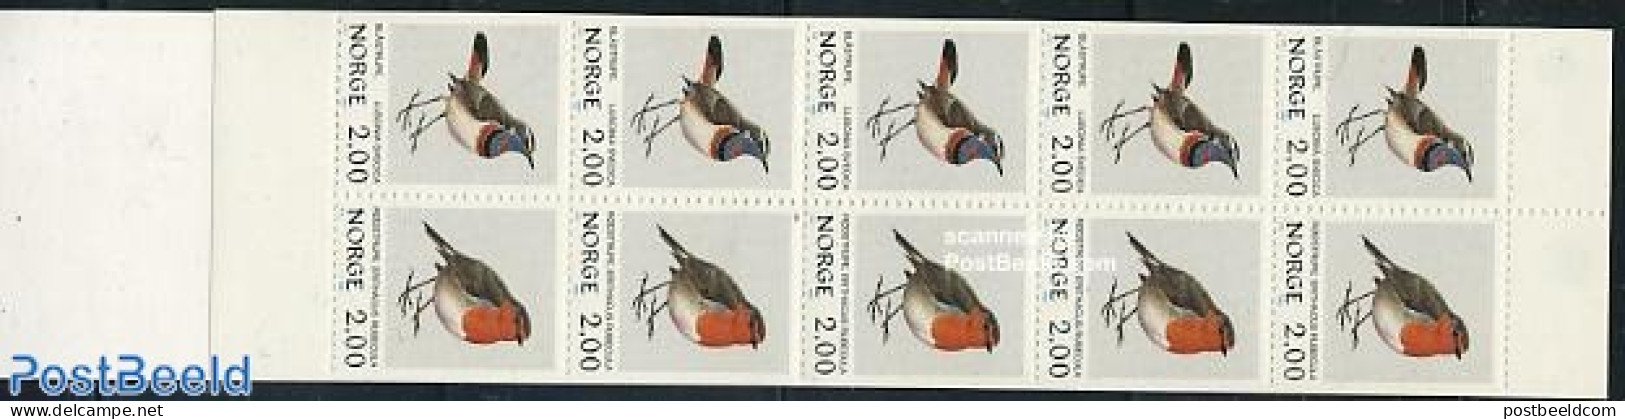 Norway 1982 Birds Booklet, Mint NH, Nature - Birds - Stamp Booklets - Ongebruikt